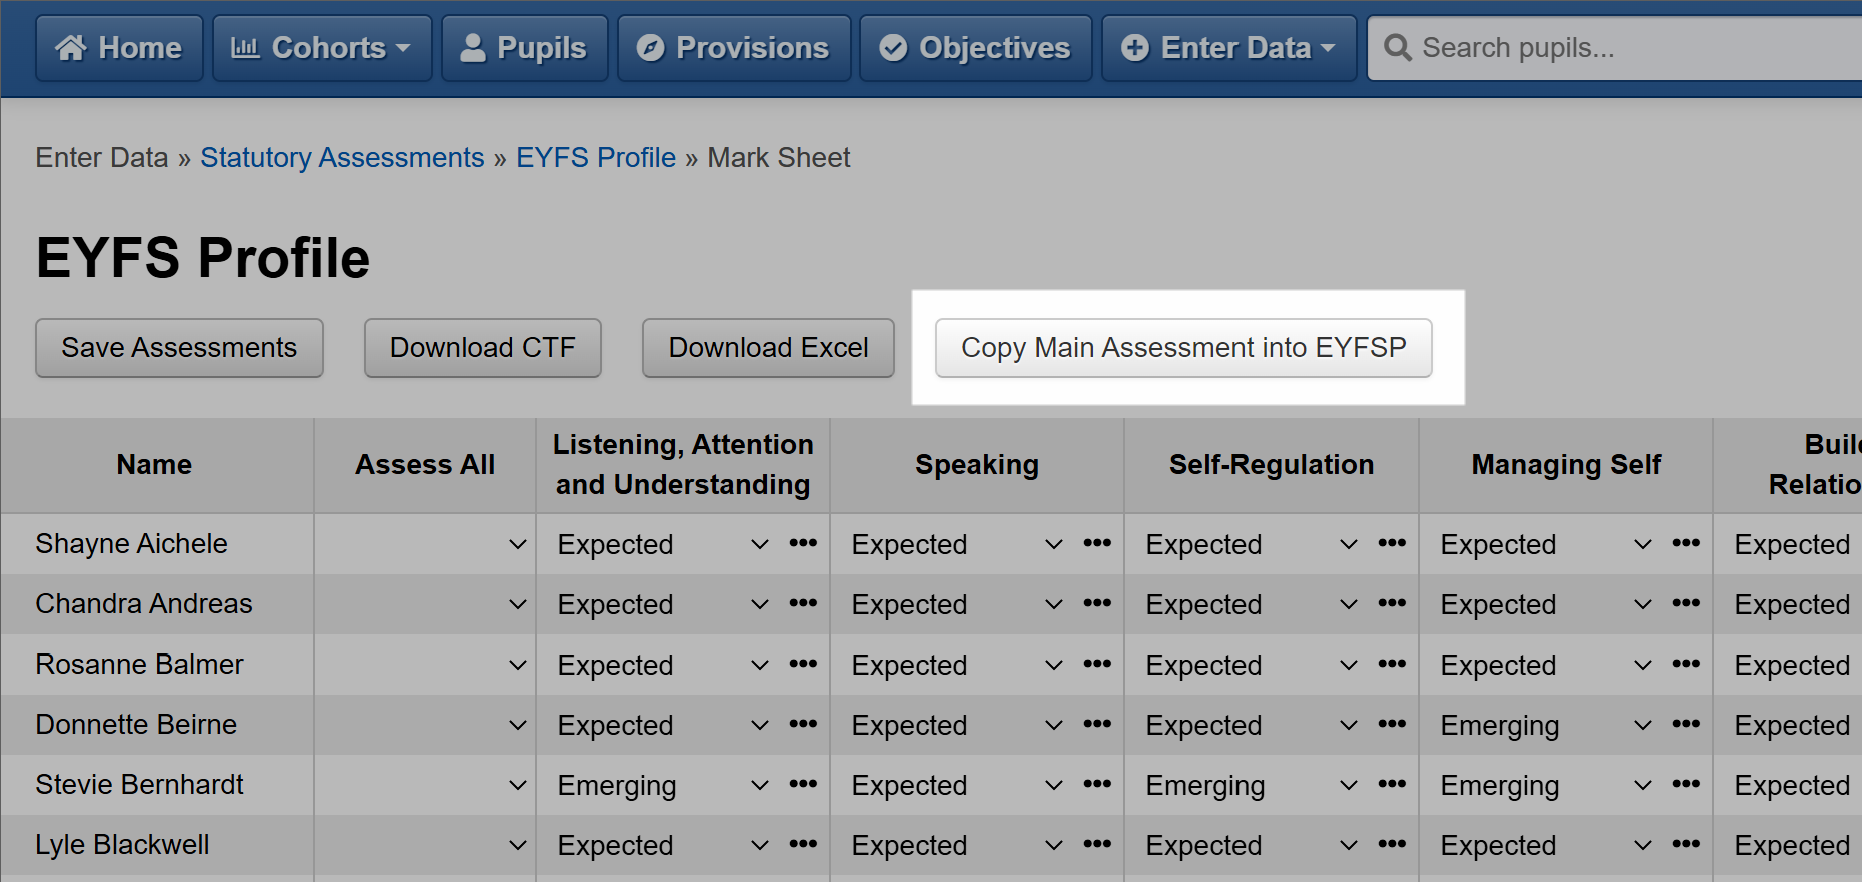 Copy Main Assessment to EYFSP button